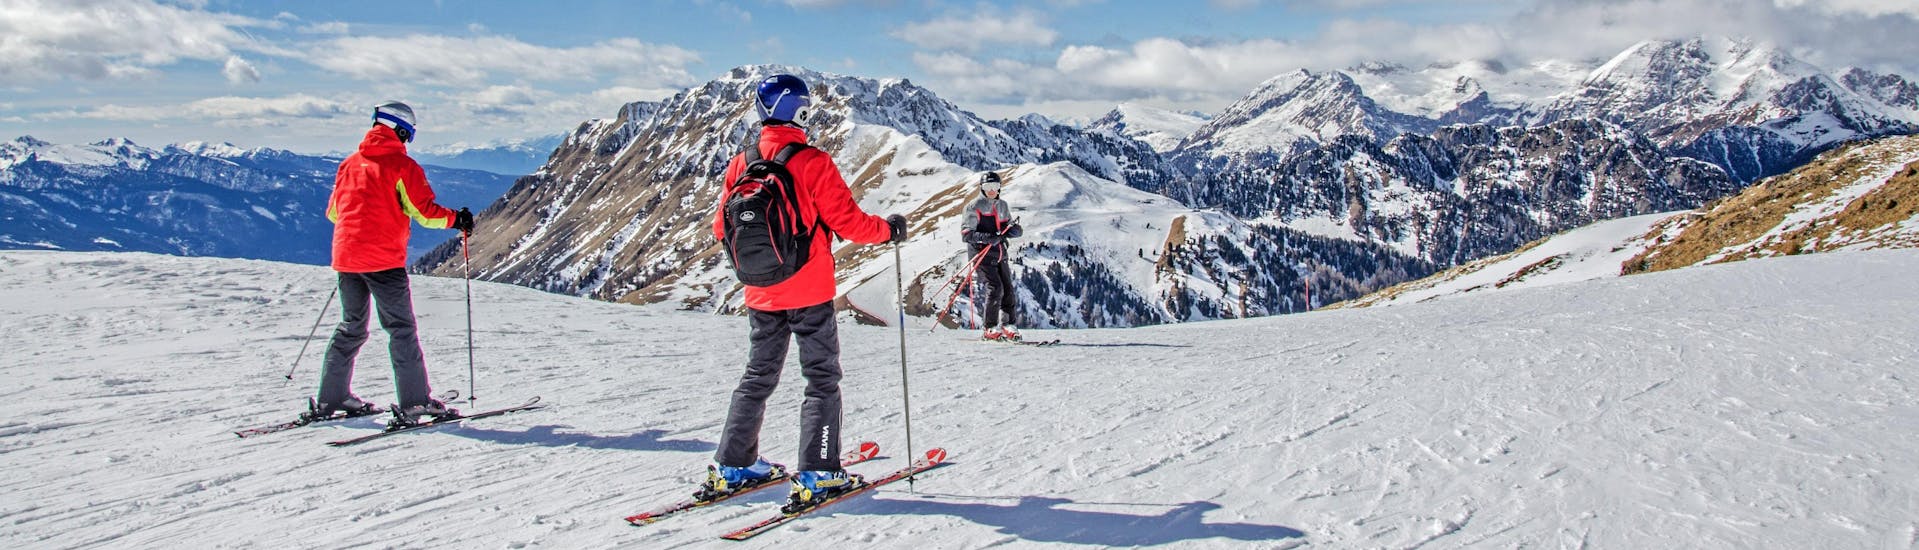 Skifahrer auf dem Gipfel der Berge mit Blick auf das Skigebiet.